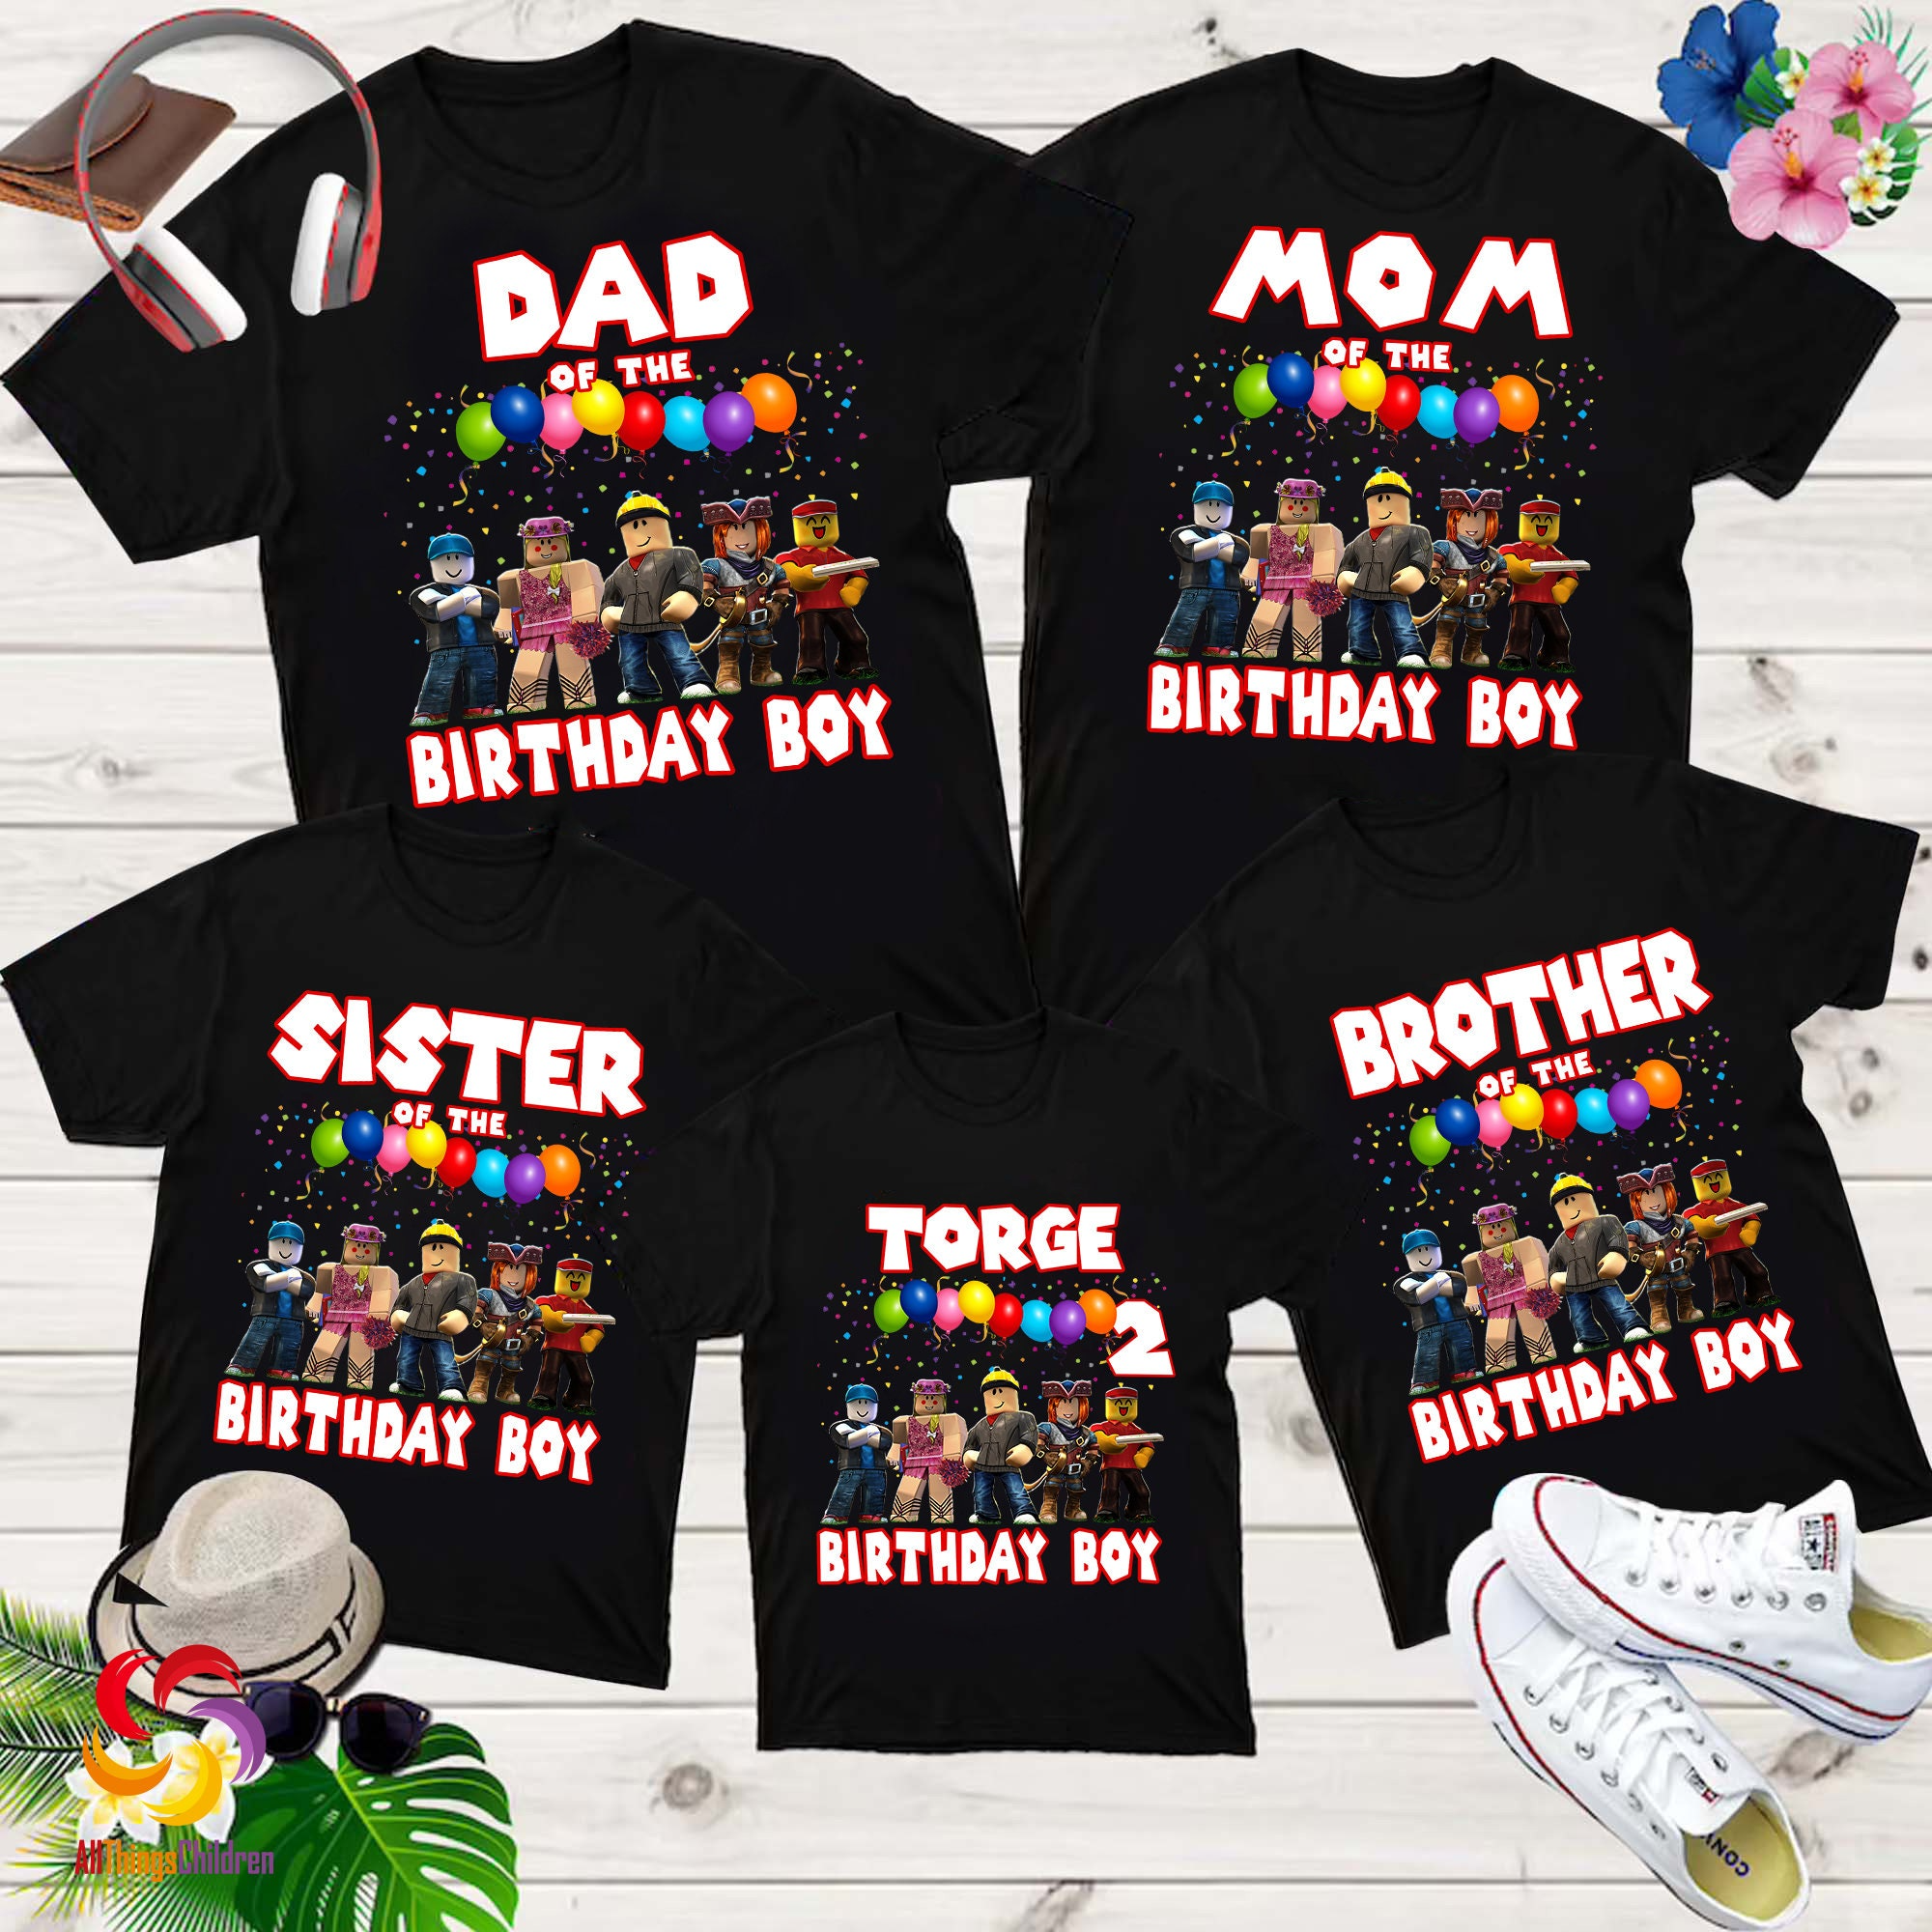 Personalized Roblox Birthday Boy Shirt, Personalized ROBLOX Set Themed Birthday Shirt, Roblox Party Shirts, Family Matching shirts